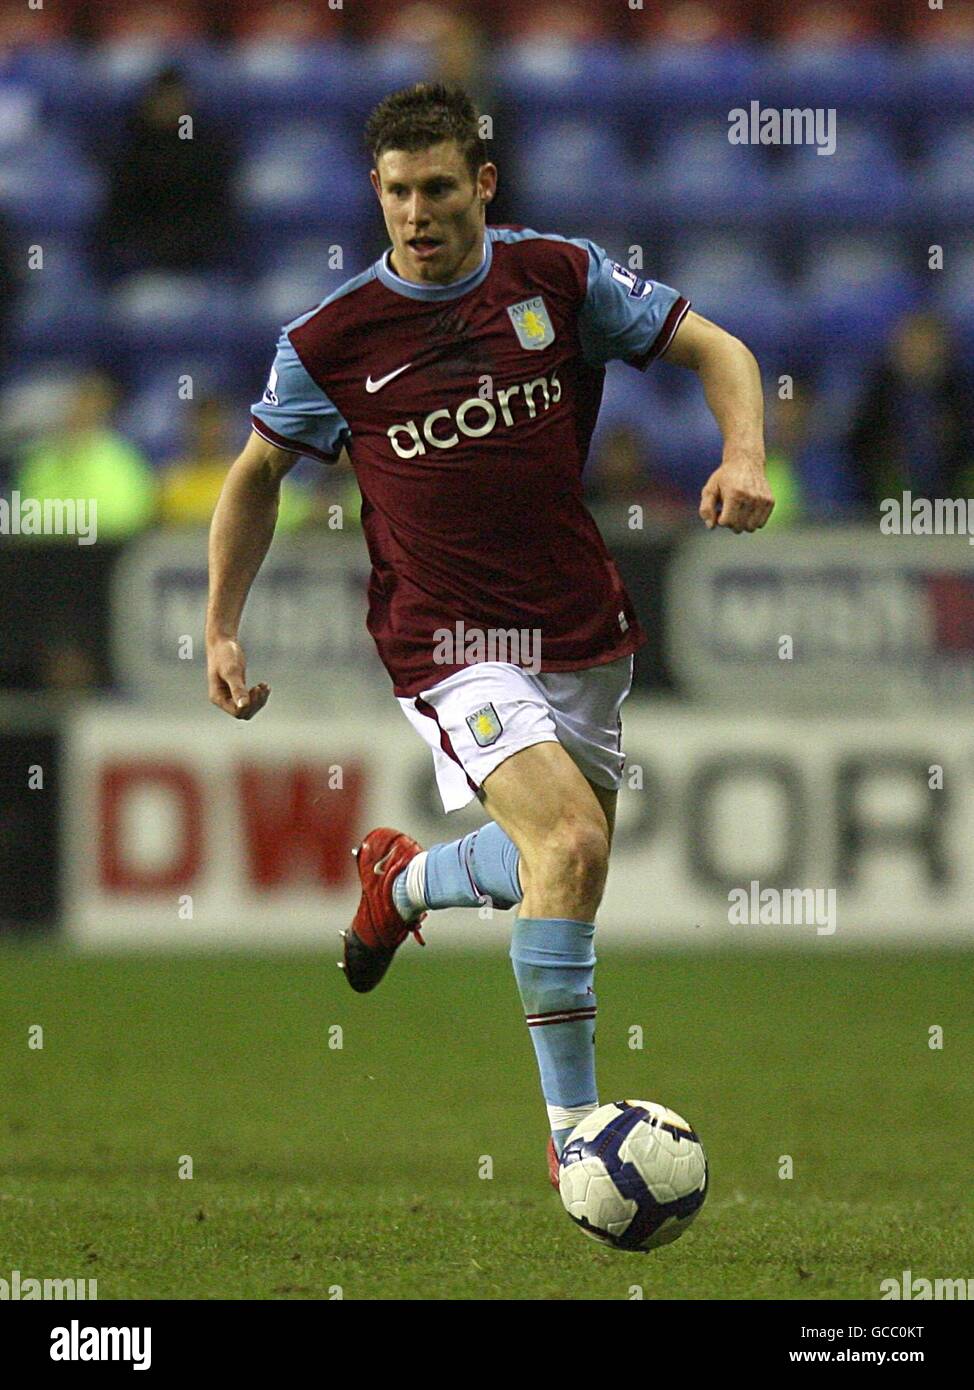 Calcio - Barclays Premier League - Wigan Athletic / Aston Villa - DW Stadium. James Milner, Aston Villa Foto Stock